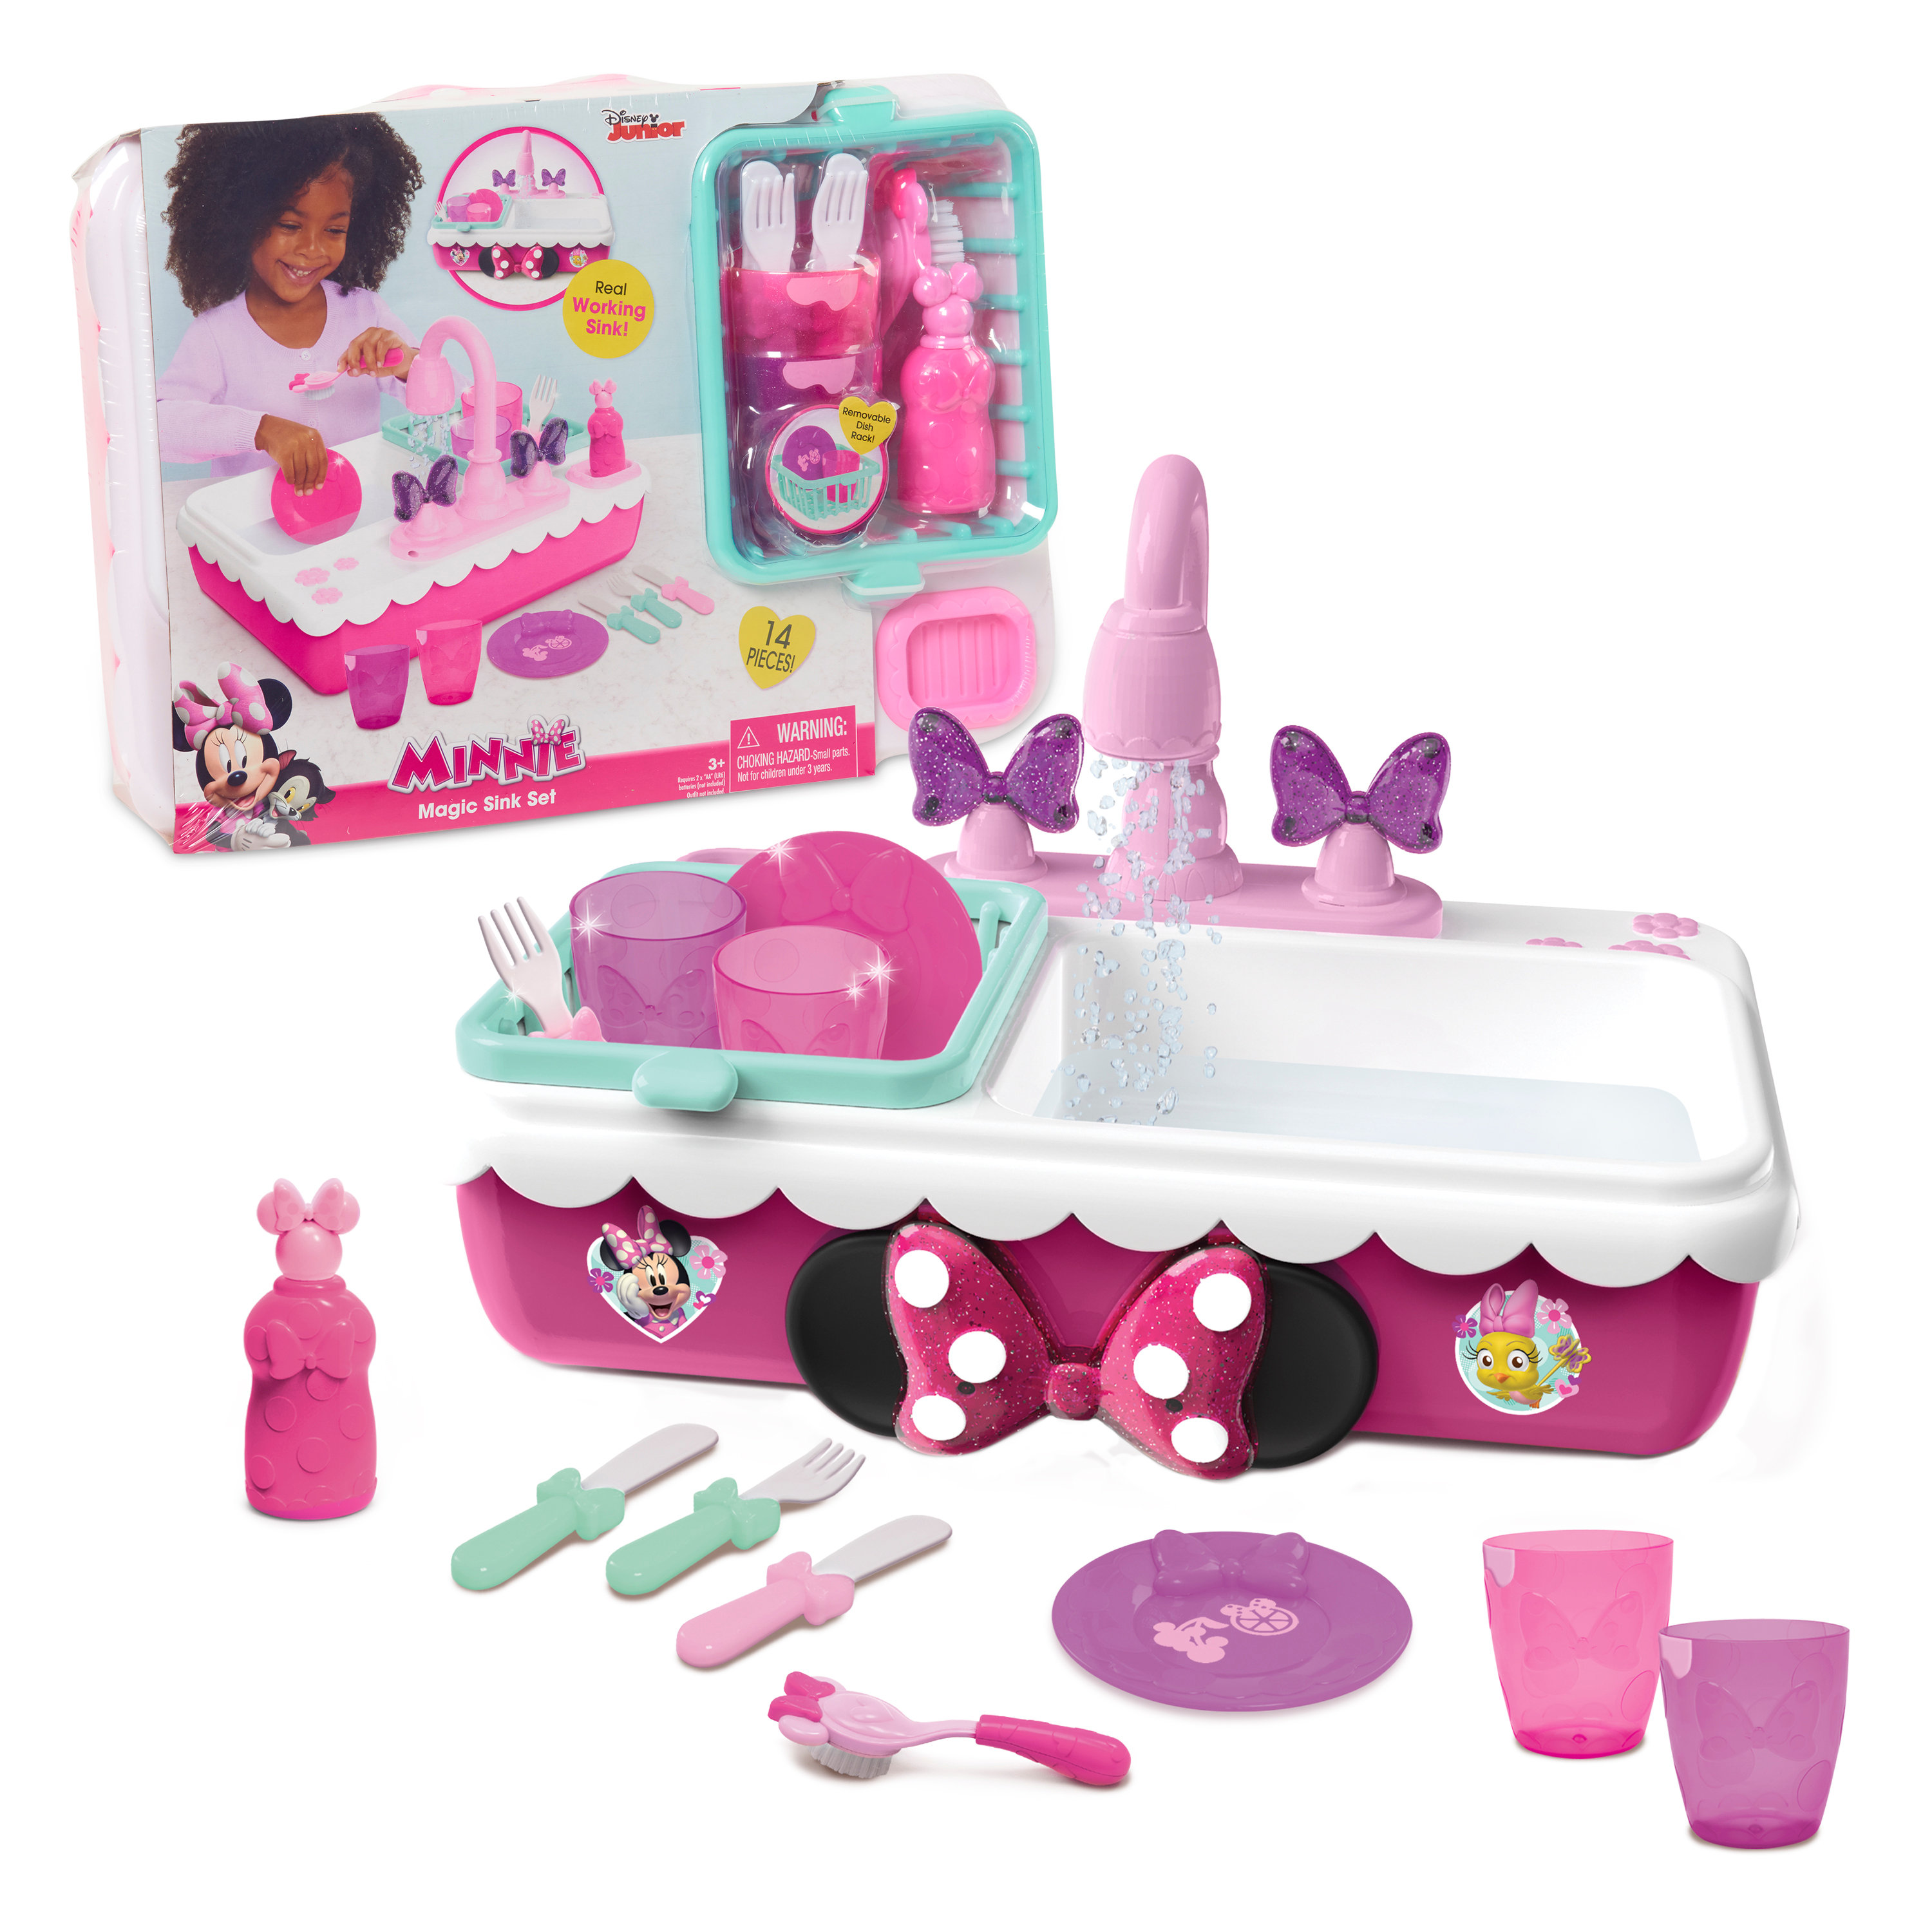 Minnie's Magic Sink Set